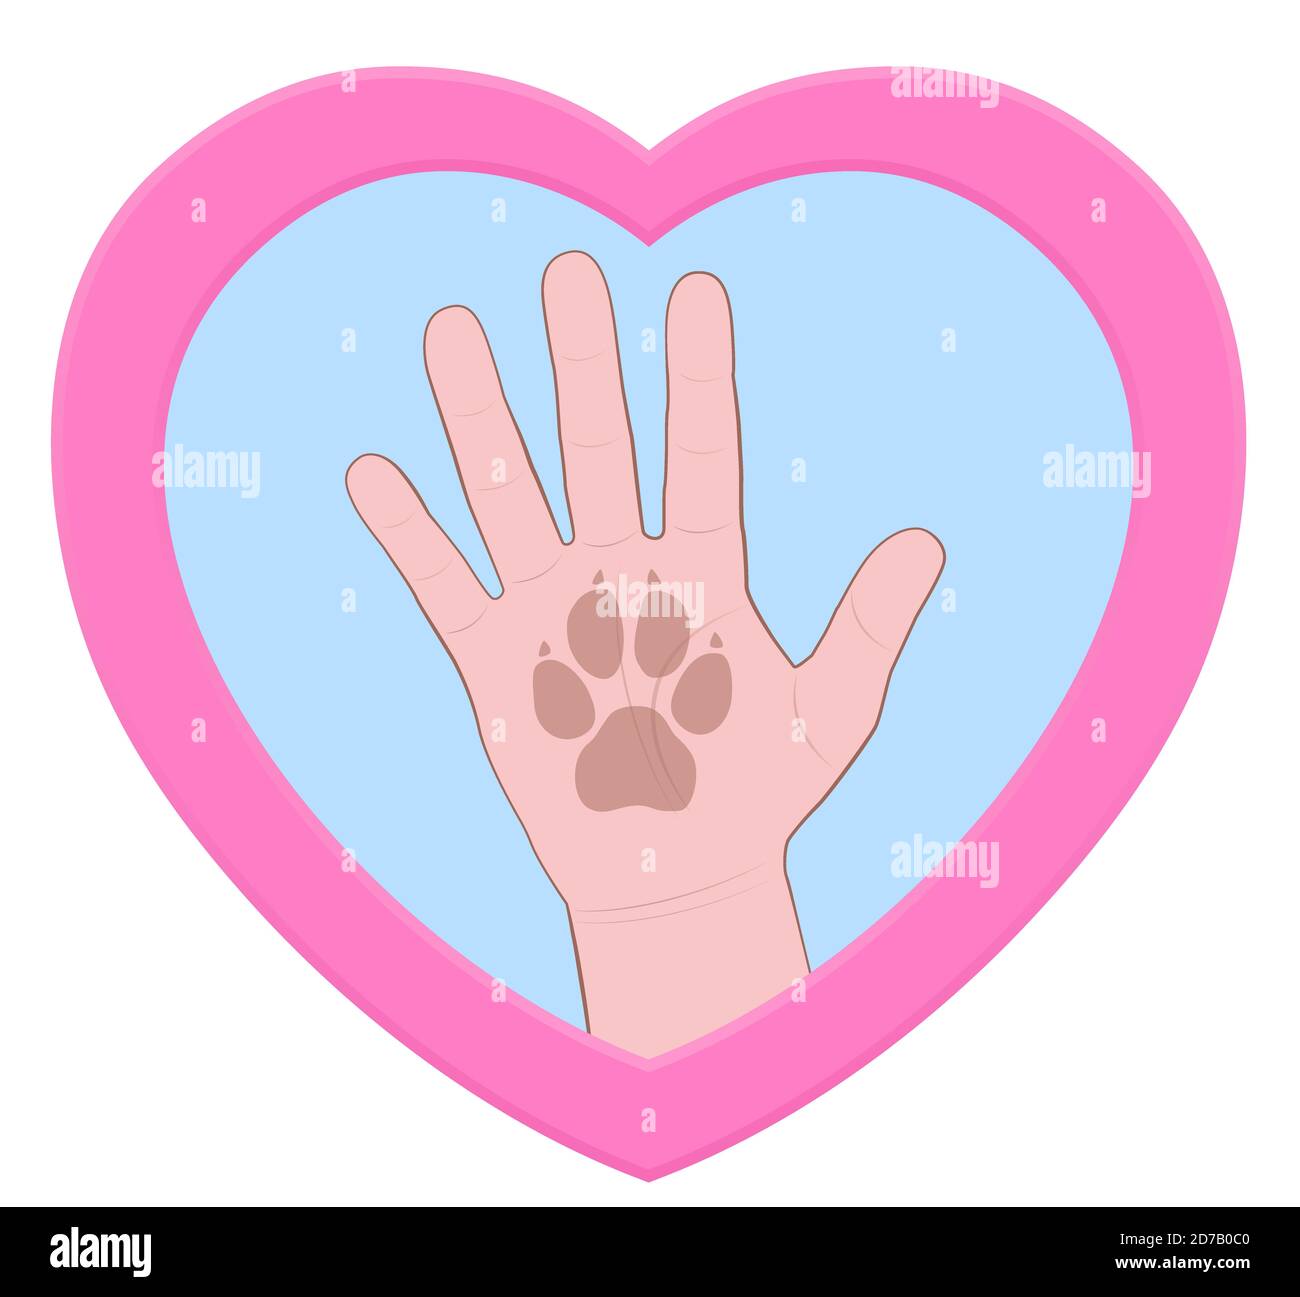 Hoch fünf. Menschliche Hand mit Hunden Pfote-Print in einem rosa Herz geformt Logo-Symbol - Comic-Illustration auf weißem Hintergrund. Stockfoto